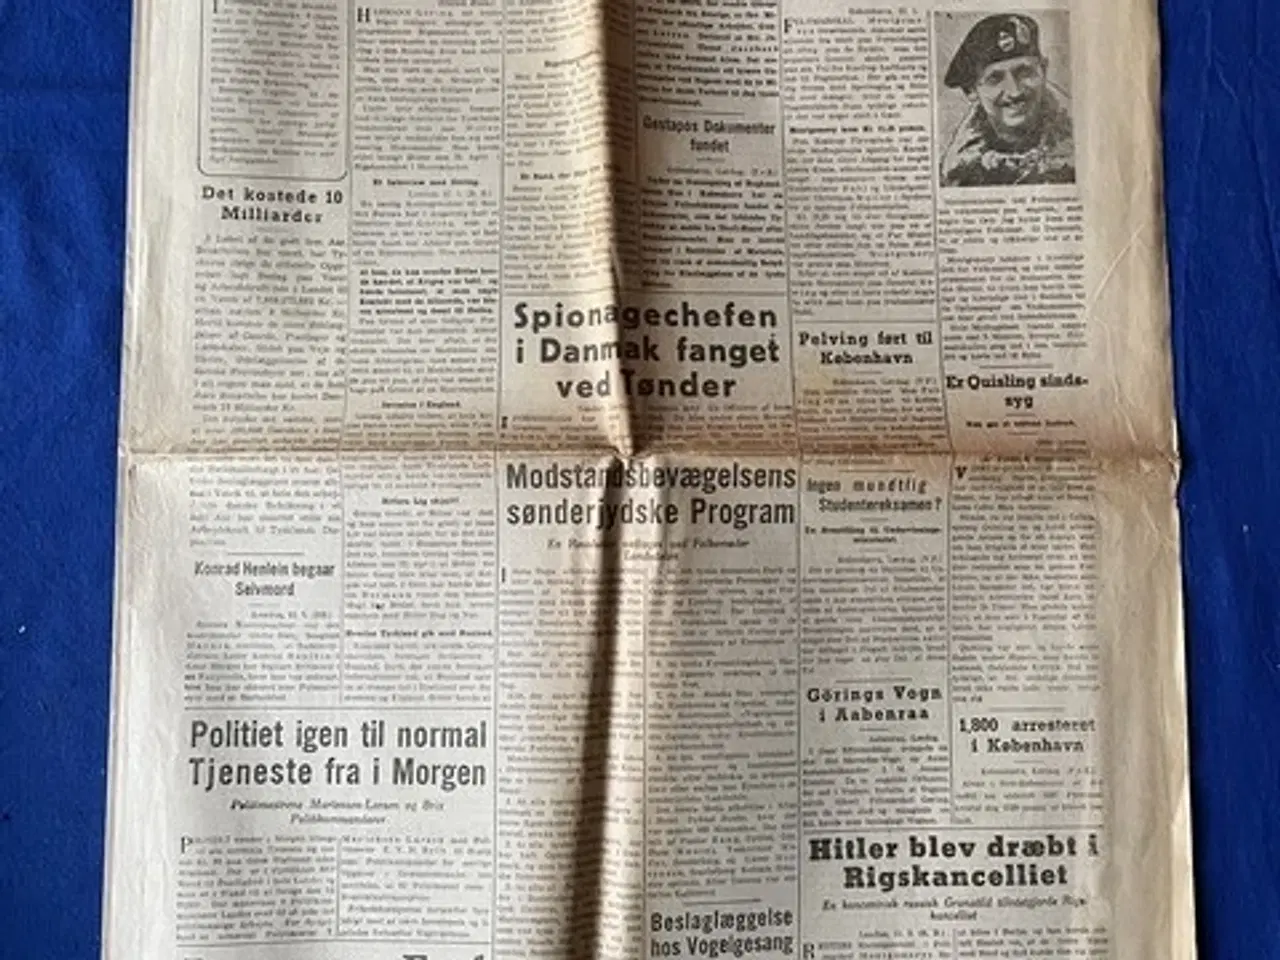 Billede 1 - Avis - Heimdal - 12. Maj 1945 - Gøring dømtes til Døden.